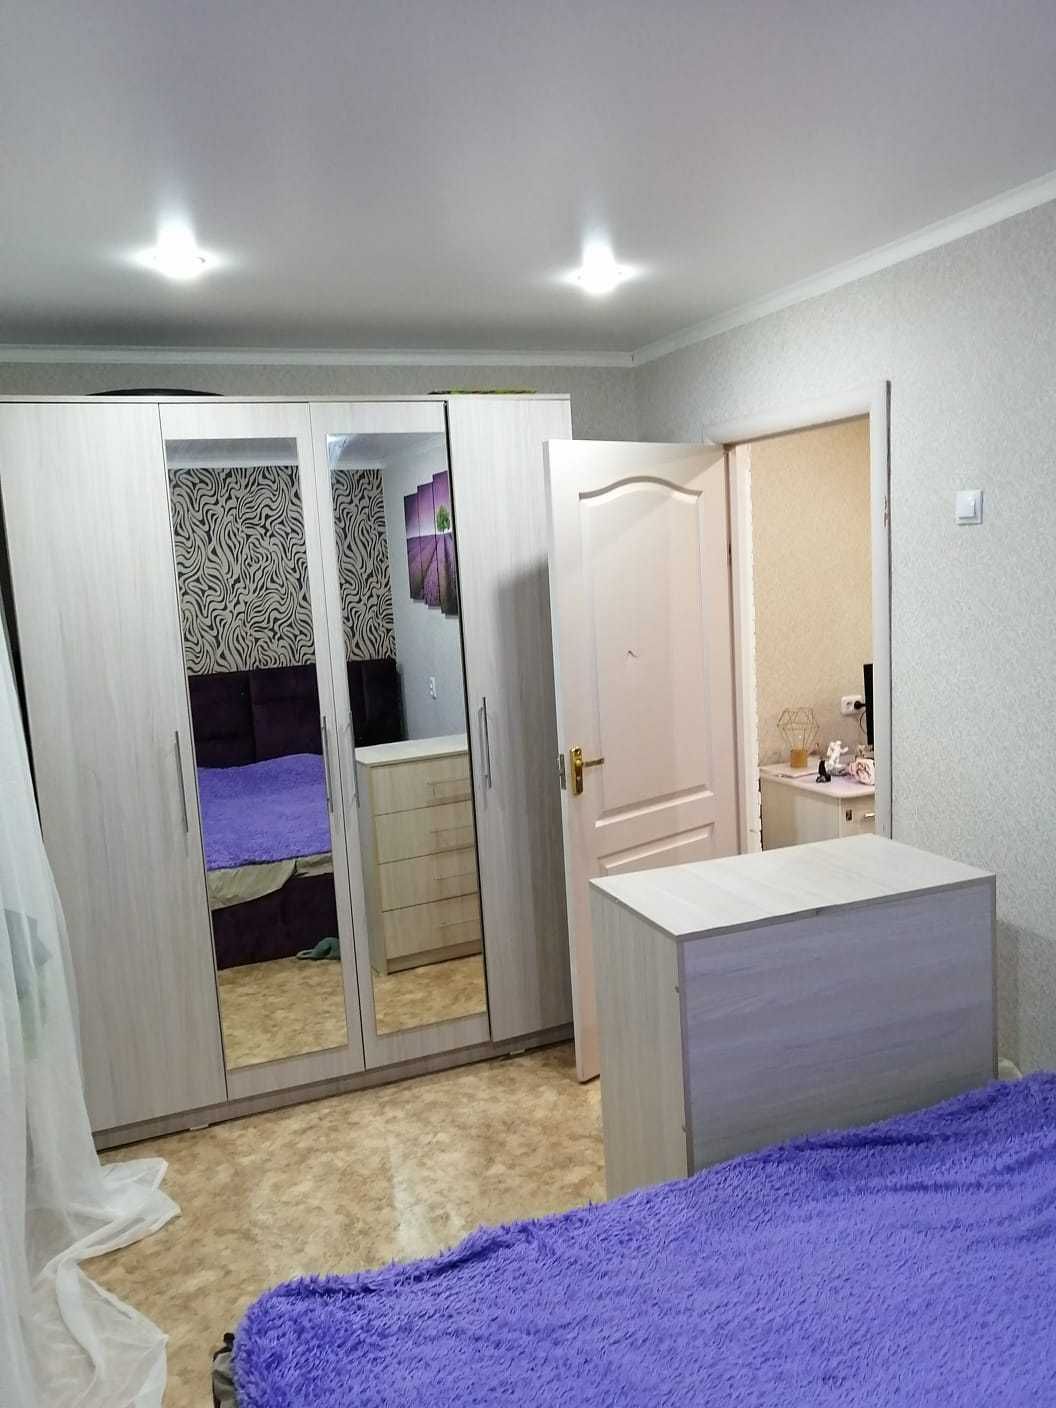 Продам 3-х комнатную комфортабельную квартиру в уютном районе